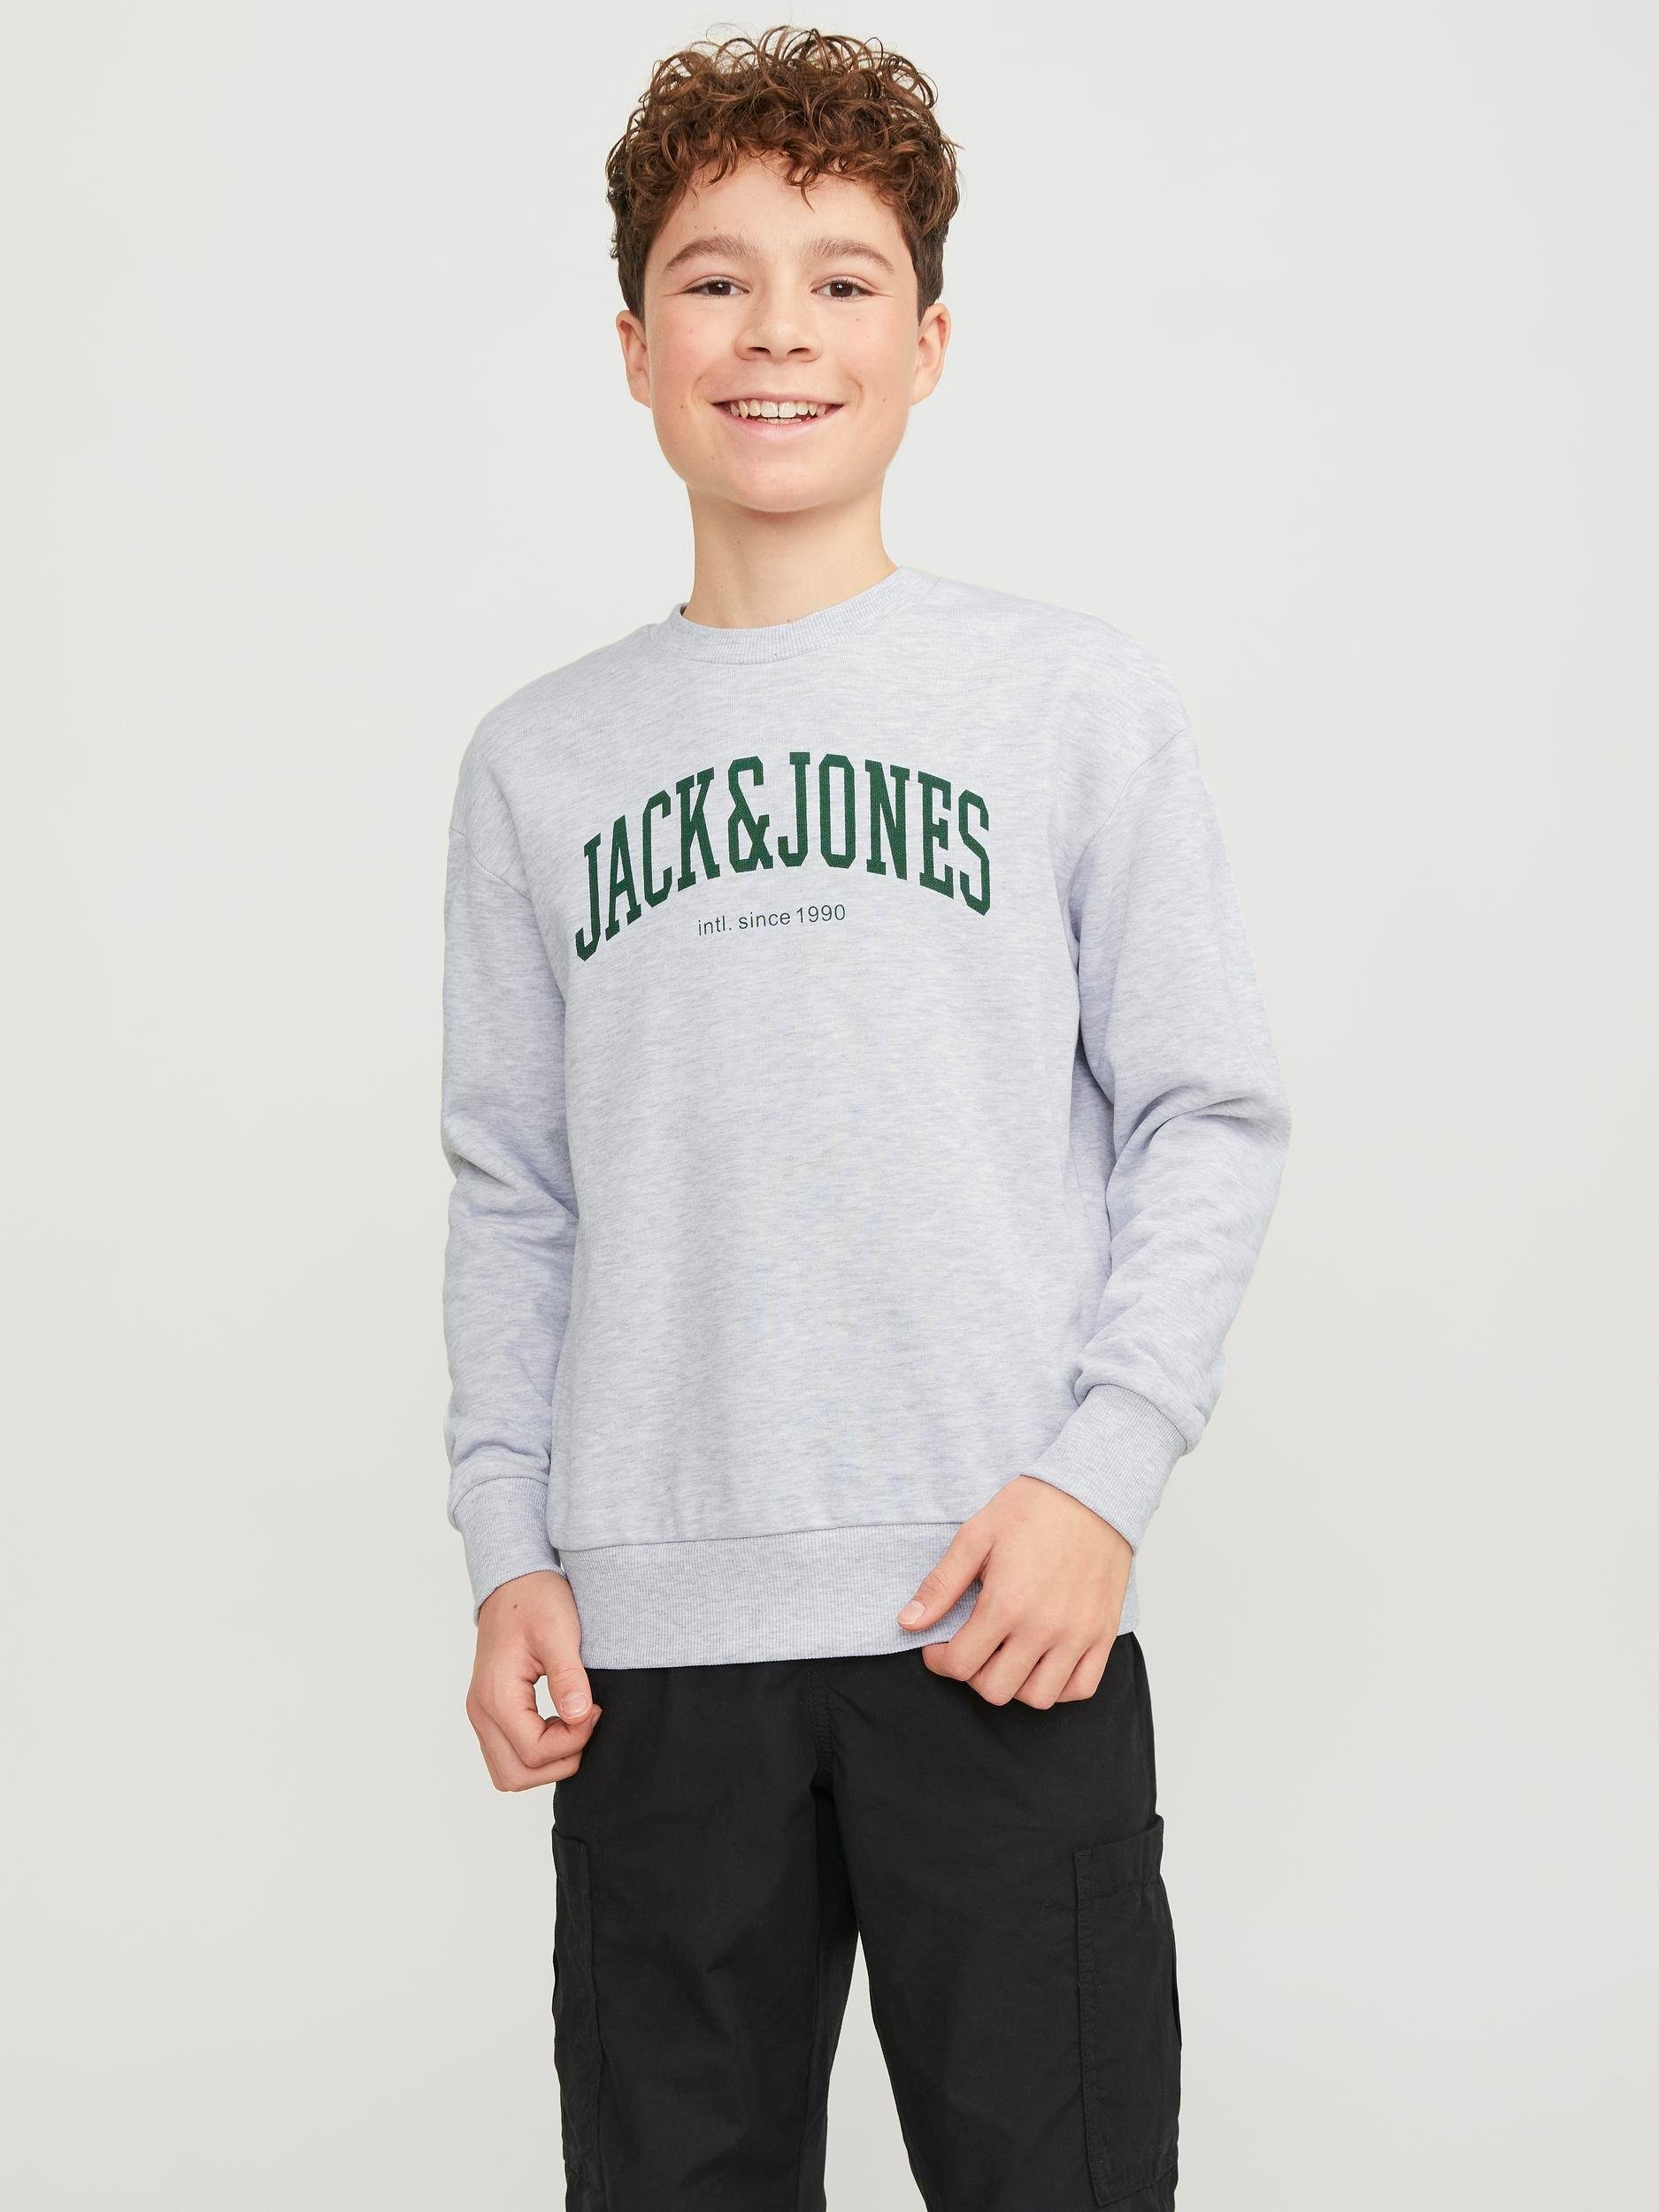 Jack & jones JUNIOR sweater JJEJOSH met tekst grijs groen Tekst 152